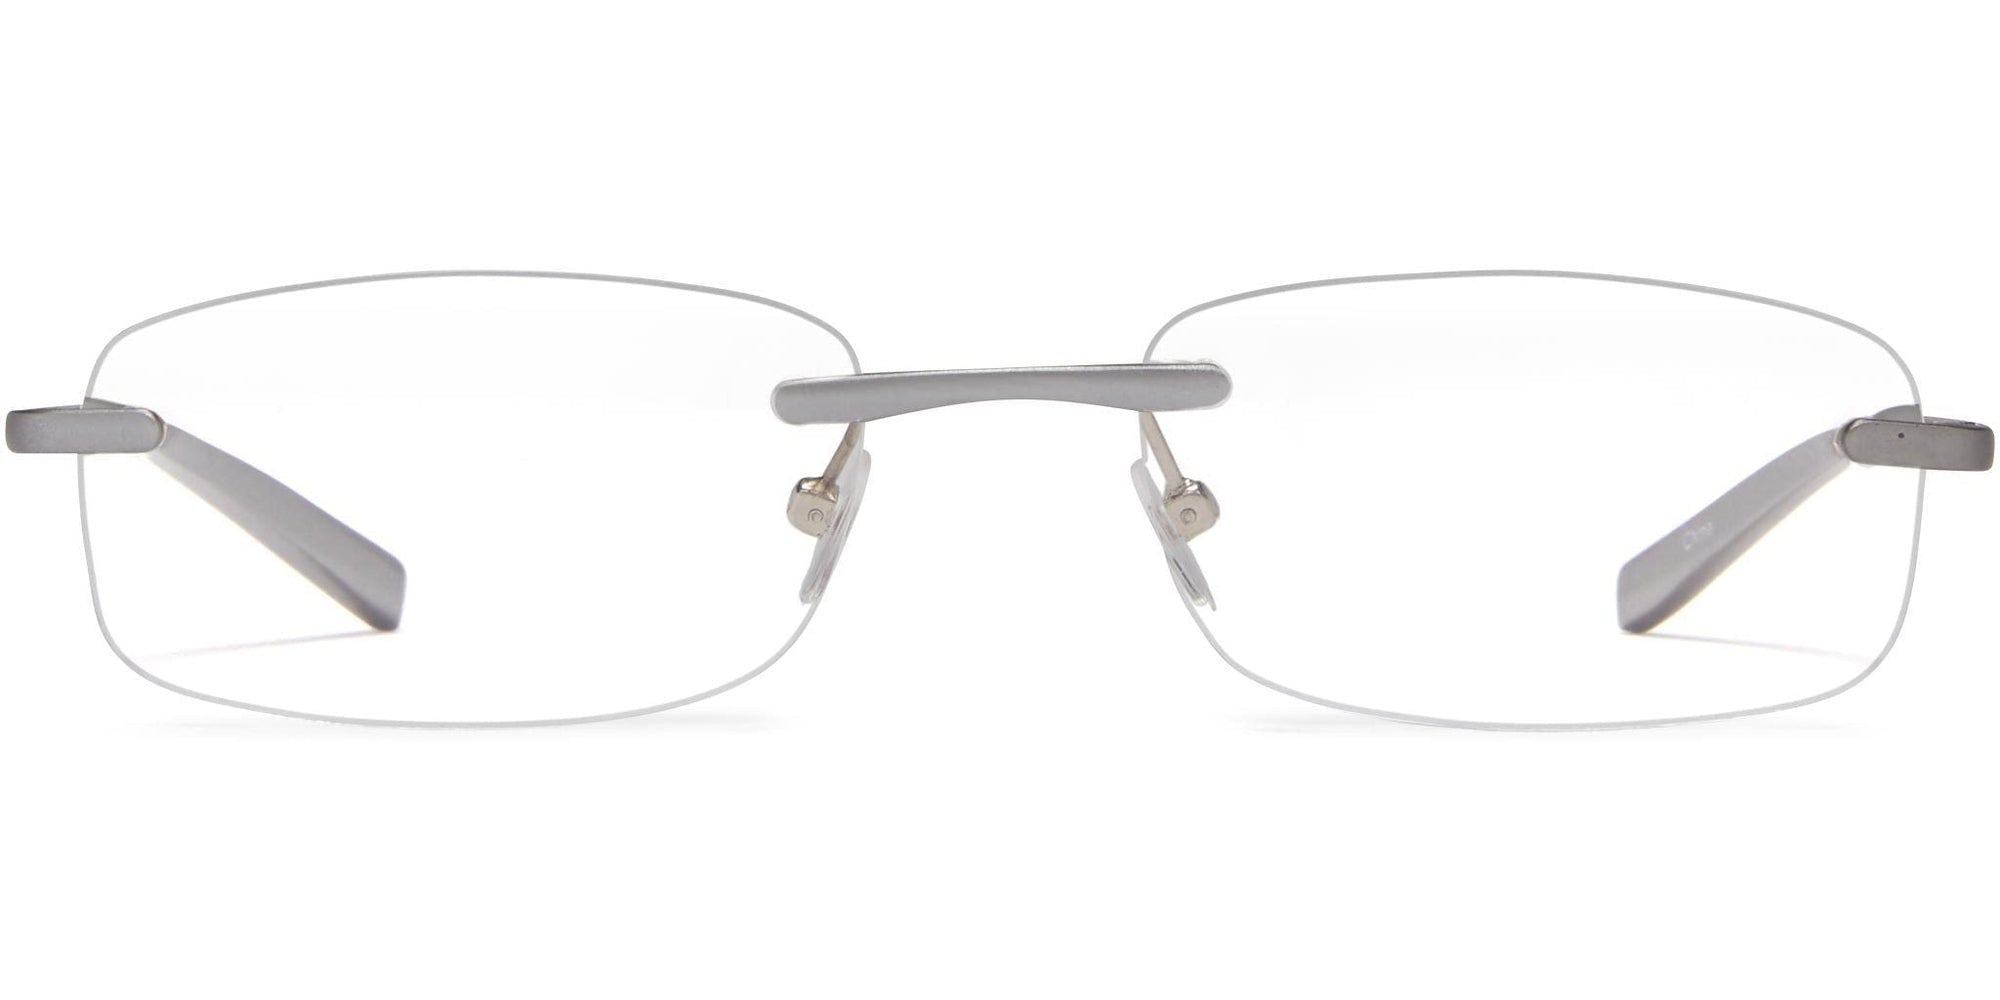 Stanford - Aluminum / 1.25 - Reading Glasses